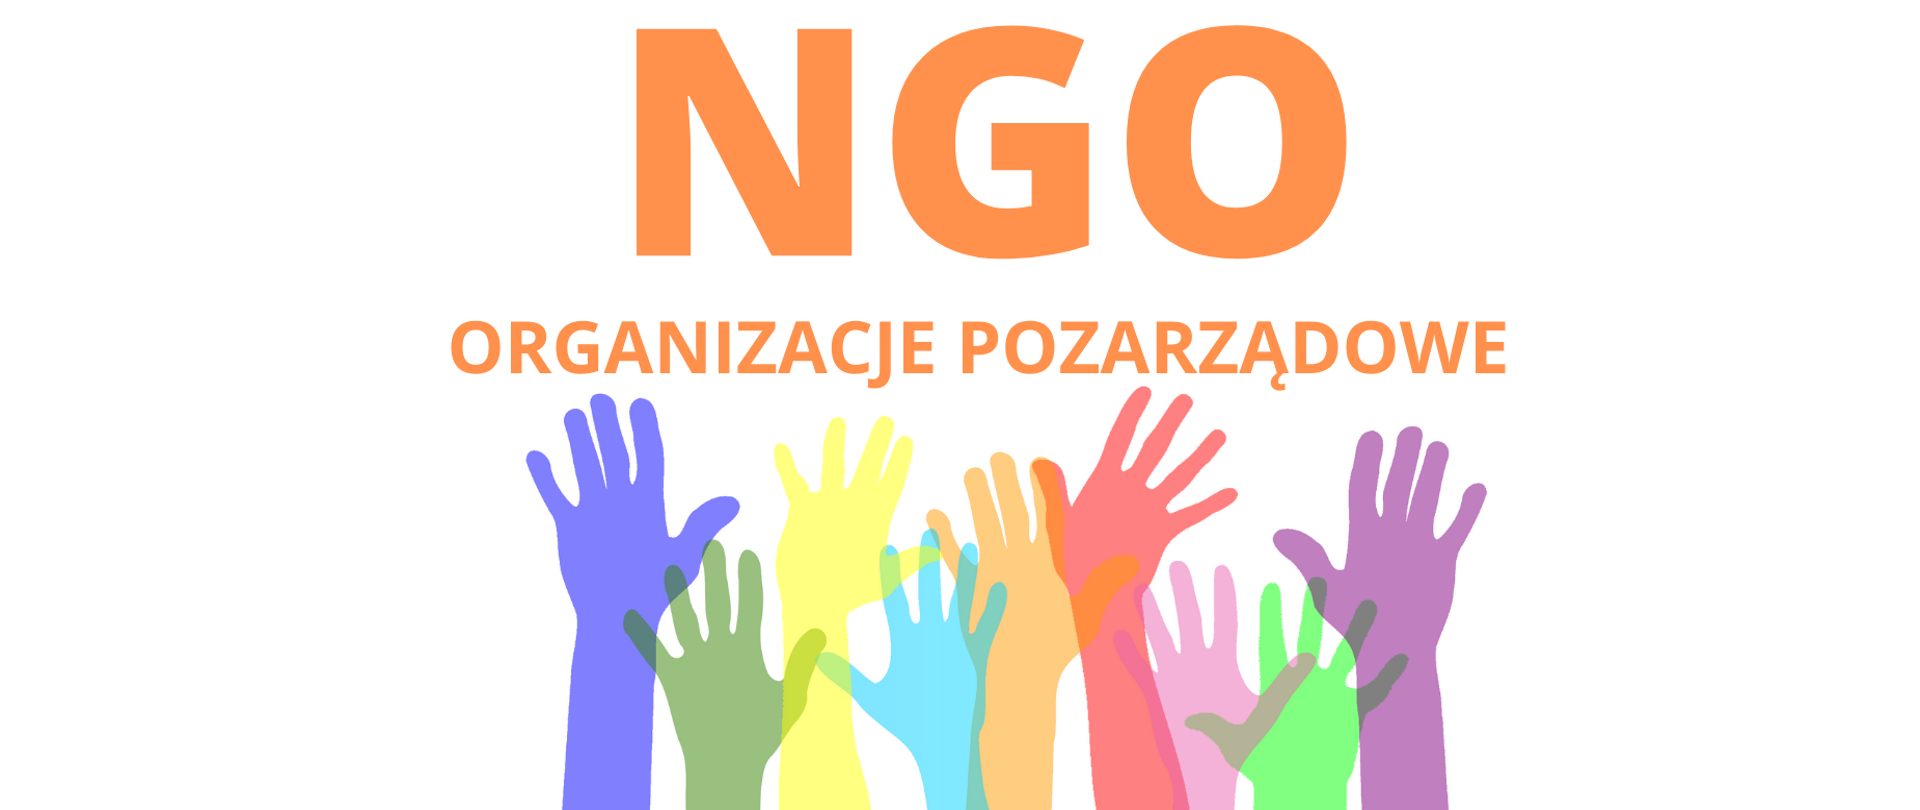 NGO - Organizacje pozarządowe